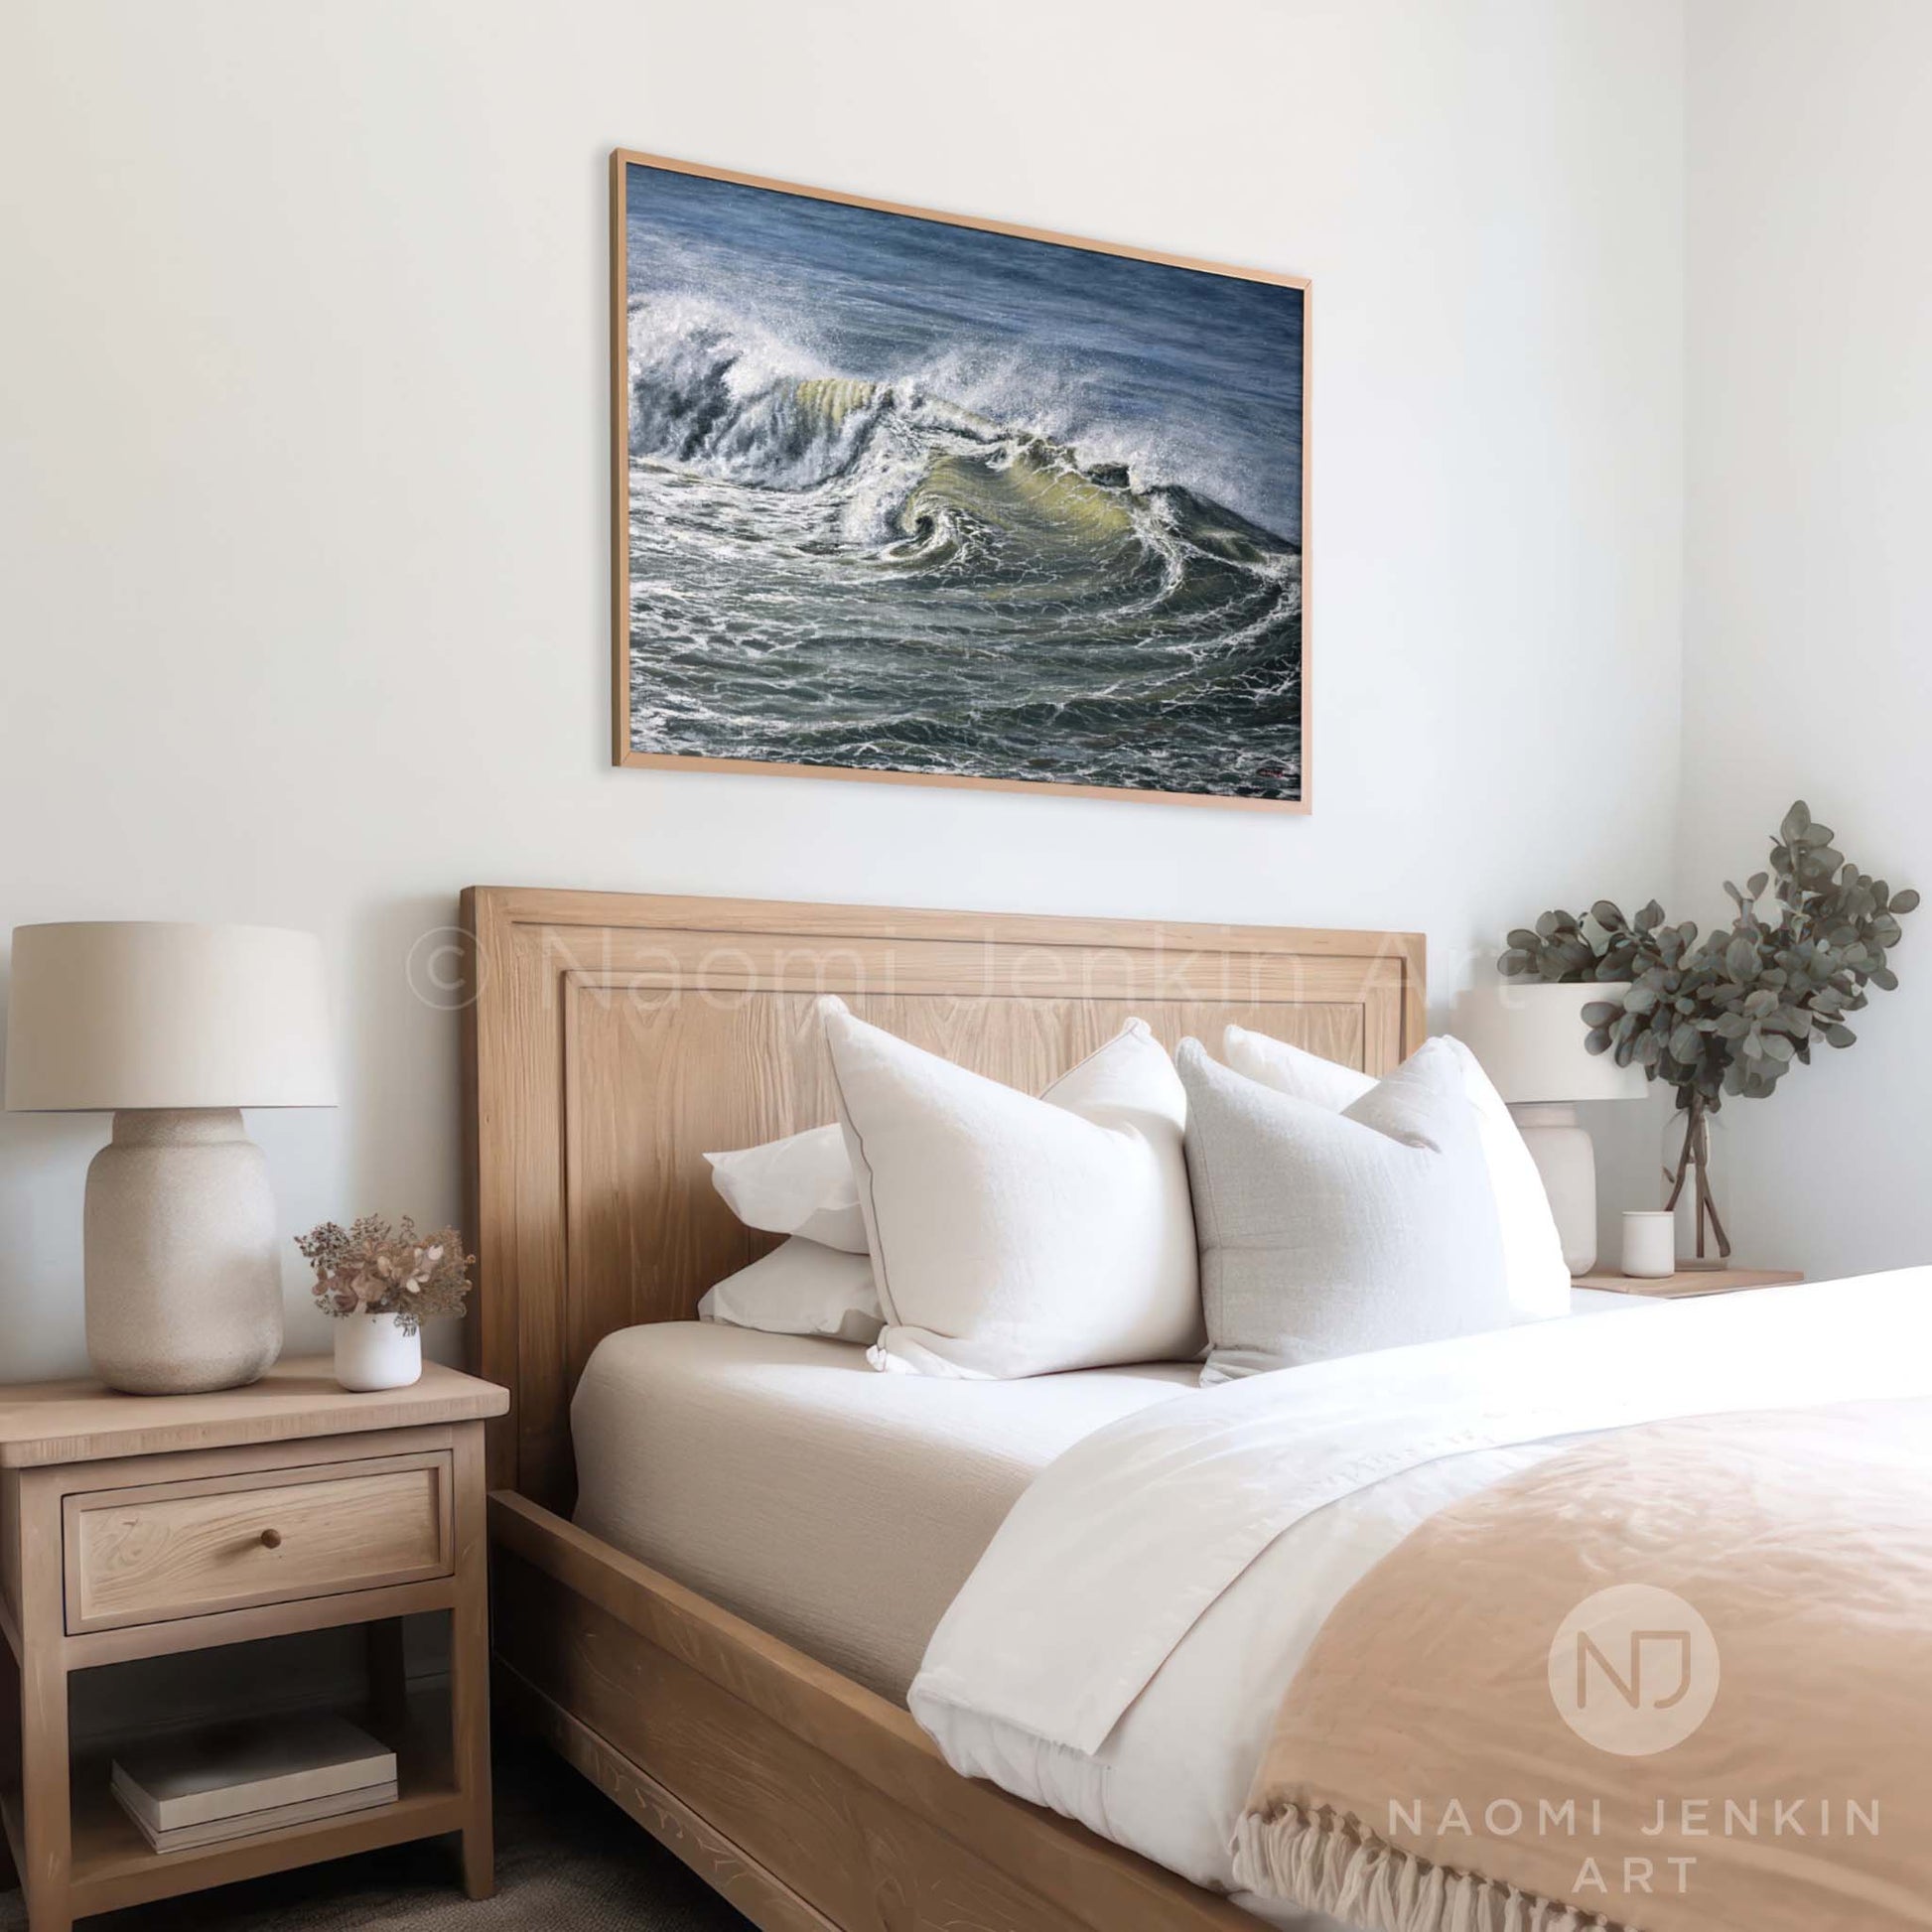 Framed 'Ocean Turmoil' seascape print by Naomi Jenkin in a bedroom setting